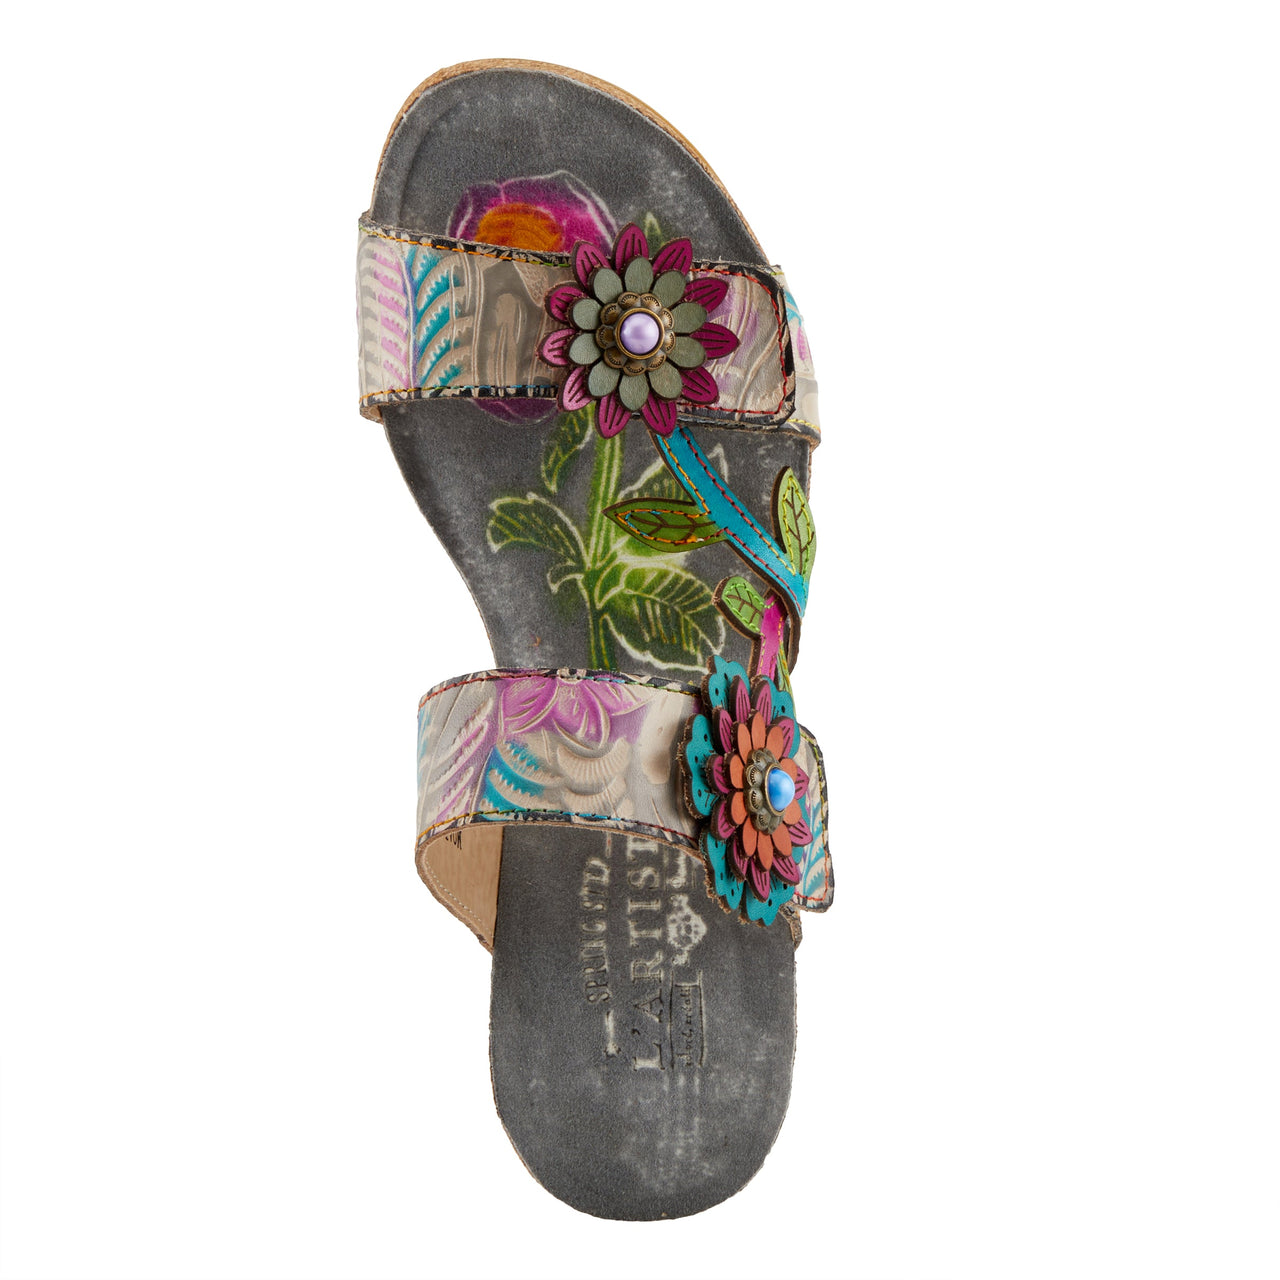 Spring Step Shoes L'Artiste Moai Sandals